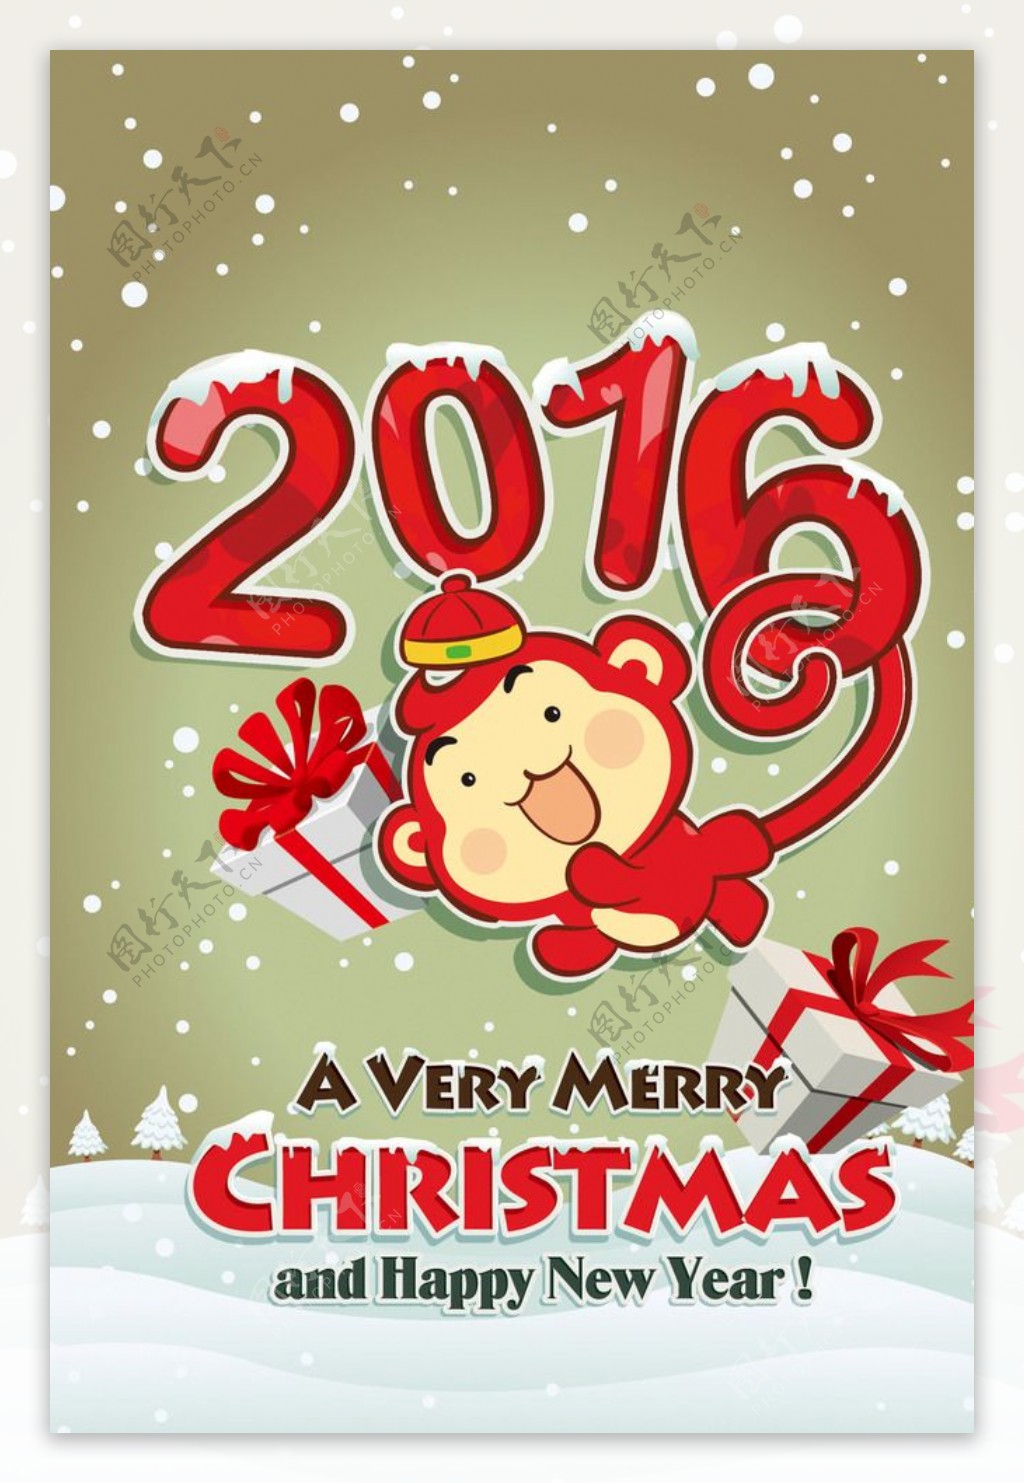 2016圣诞快乐猴年新年快乐